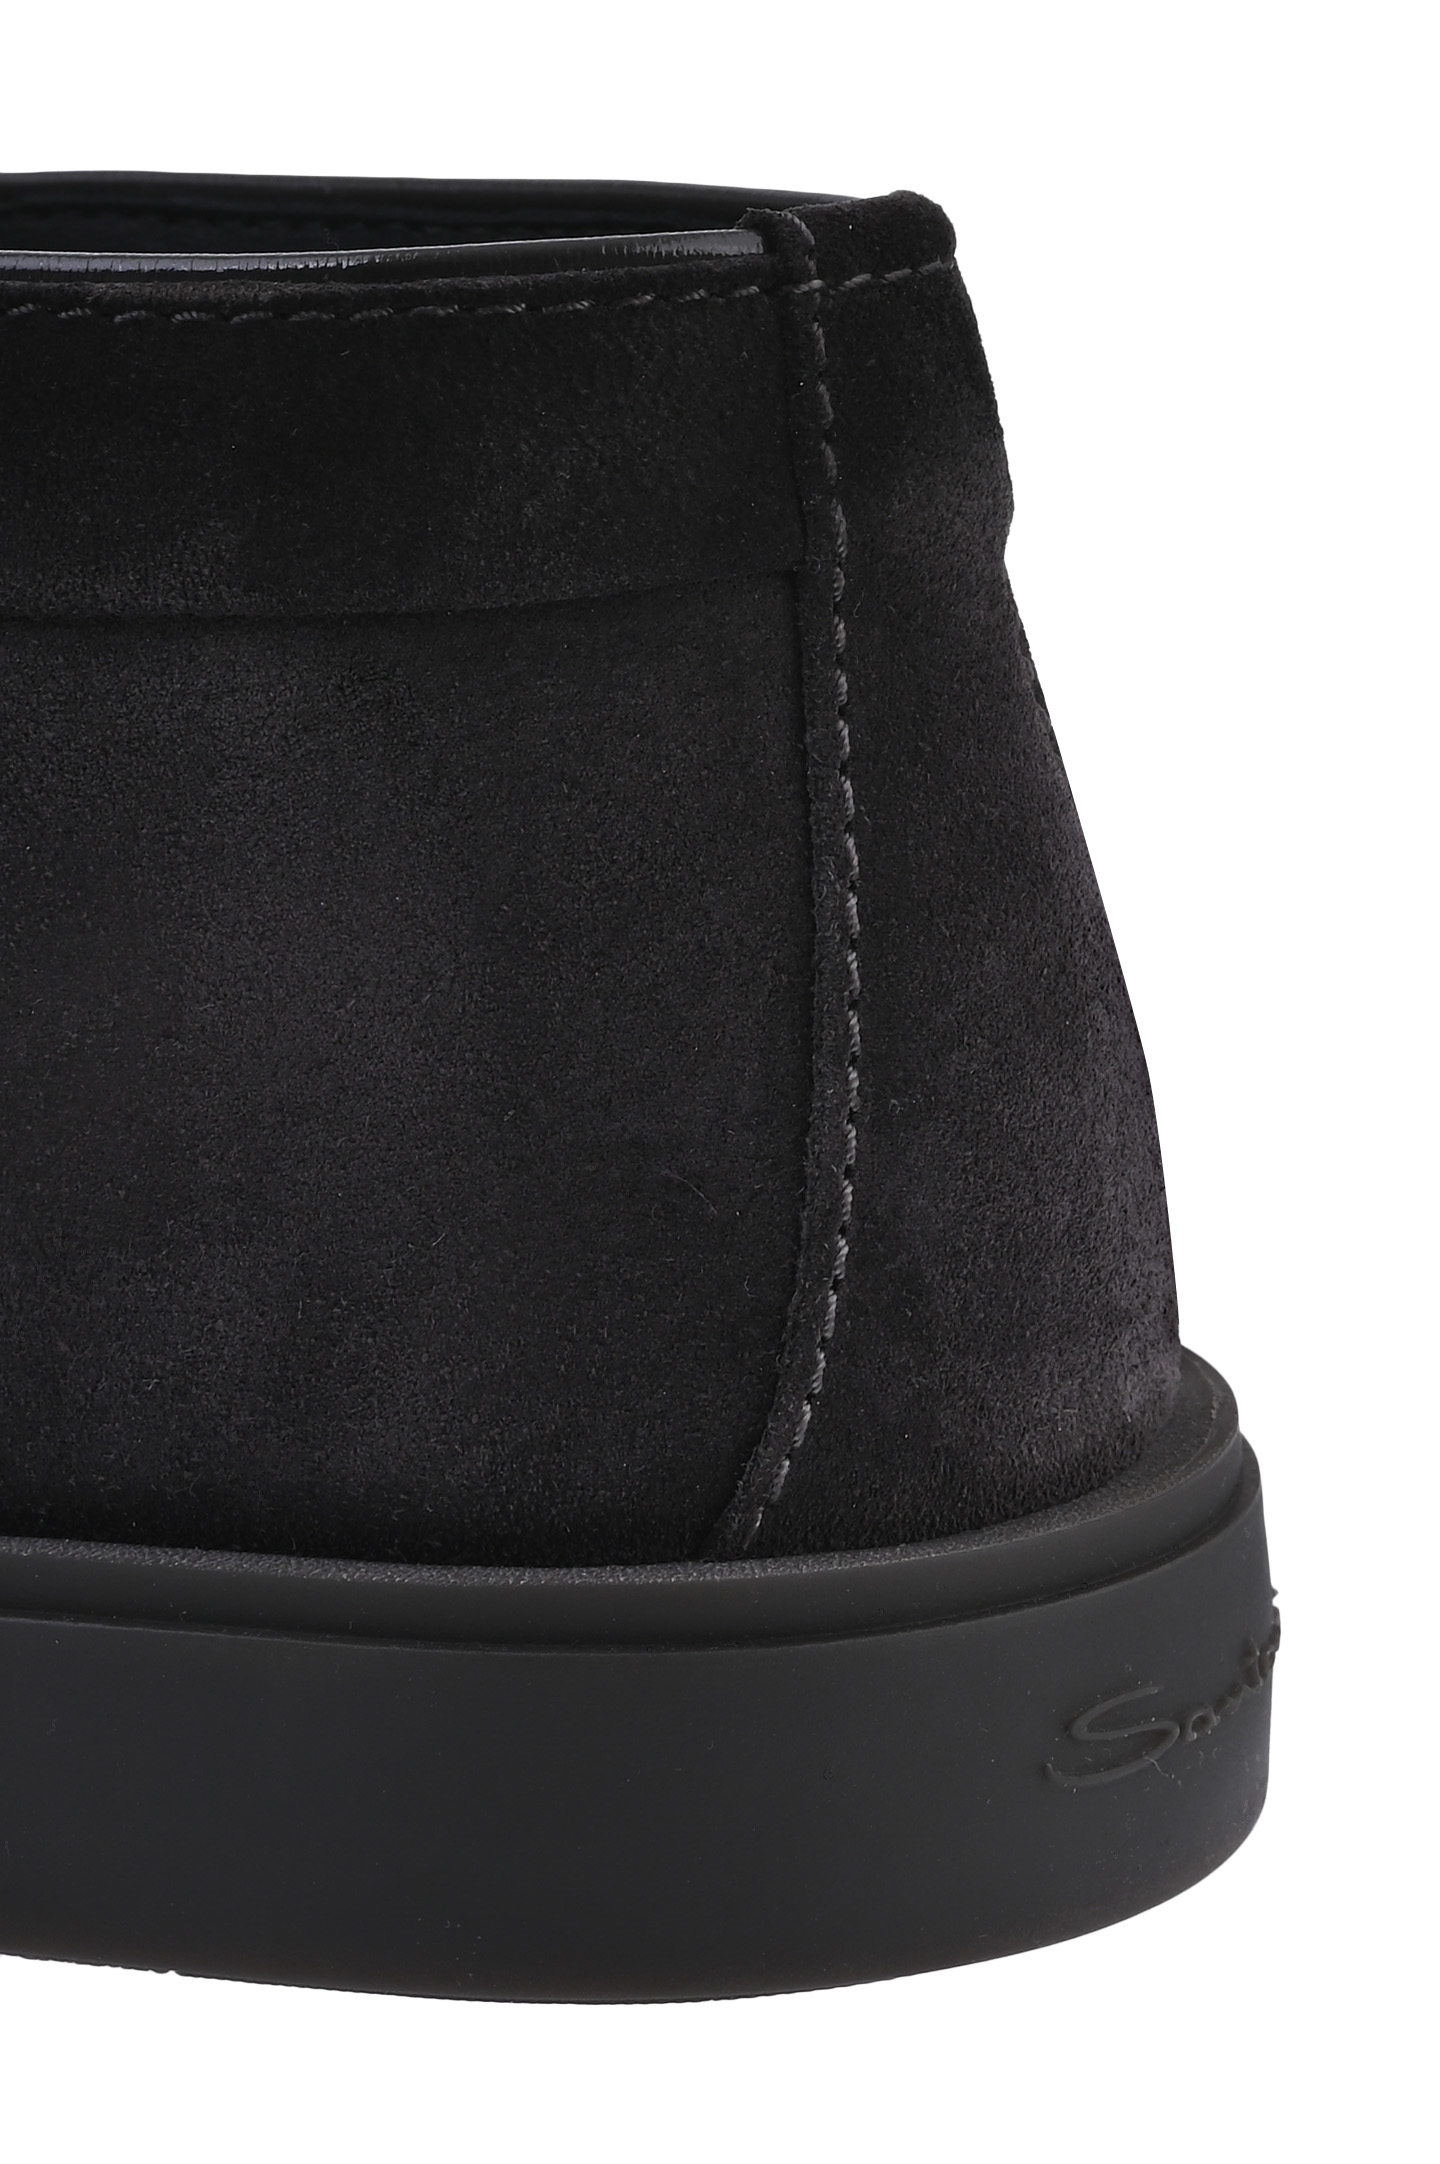 Ботинки SANTONI MGDG17823SMOAGEXG76, цвет: Серый, Мужской